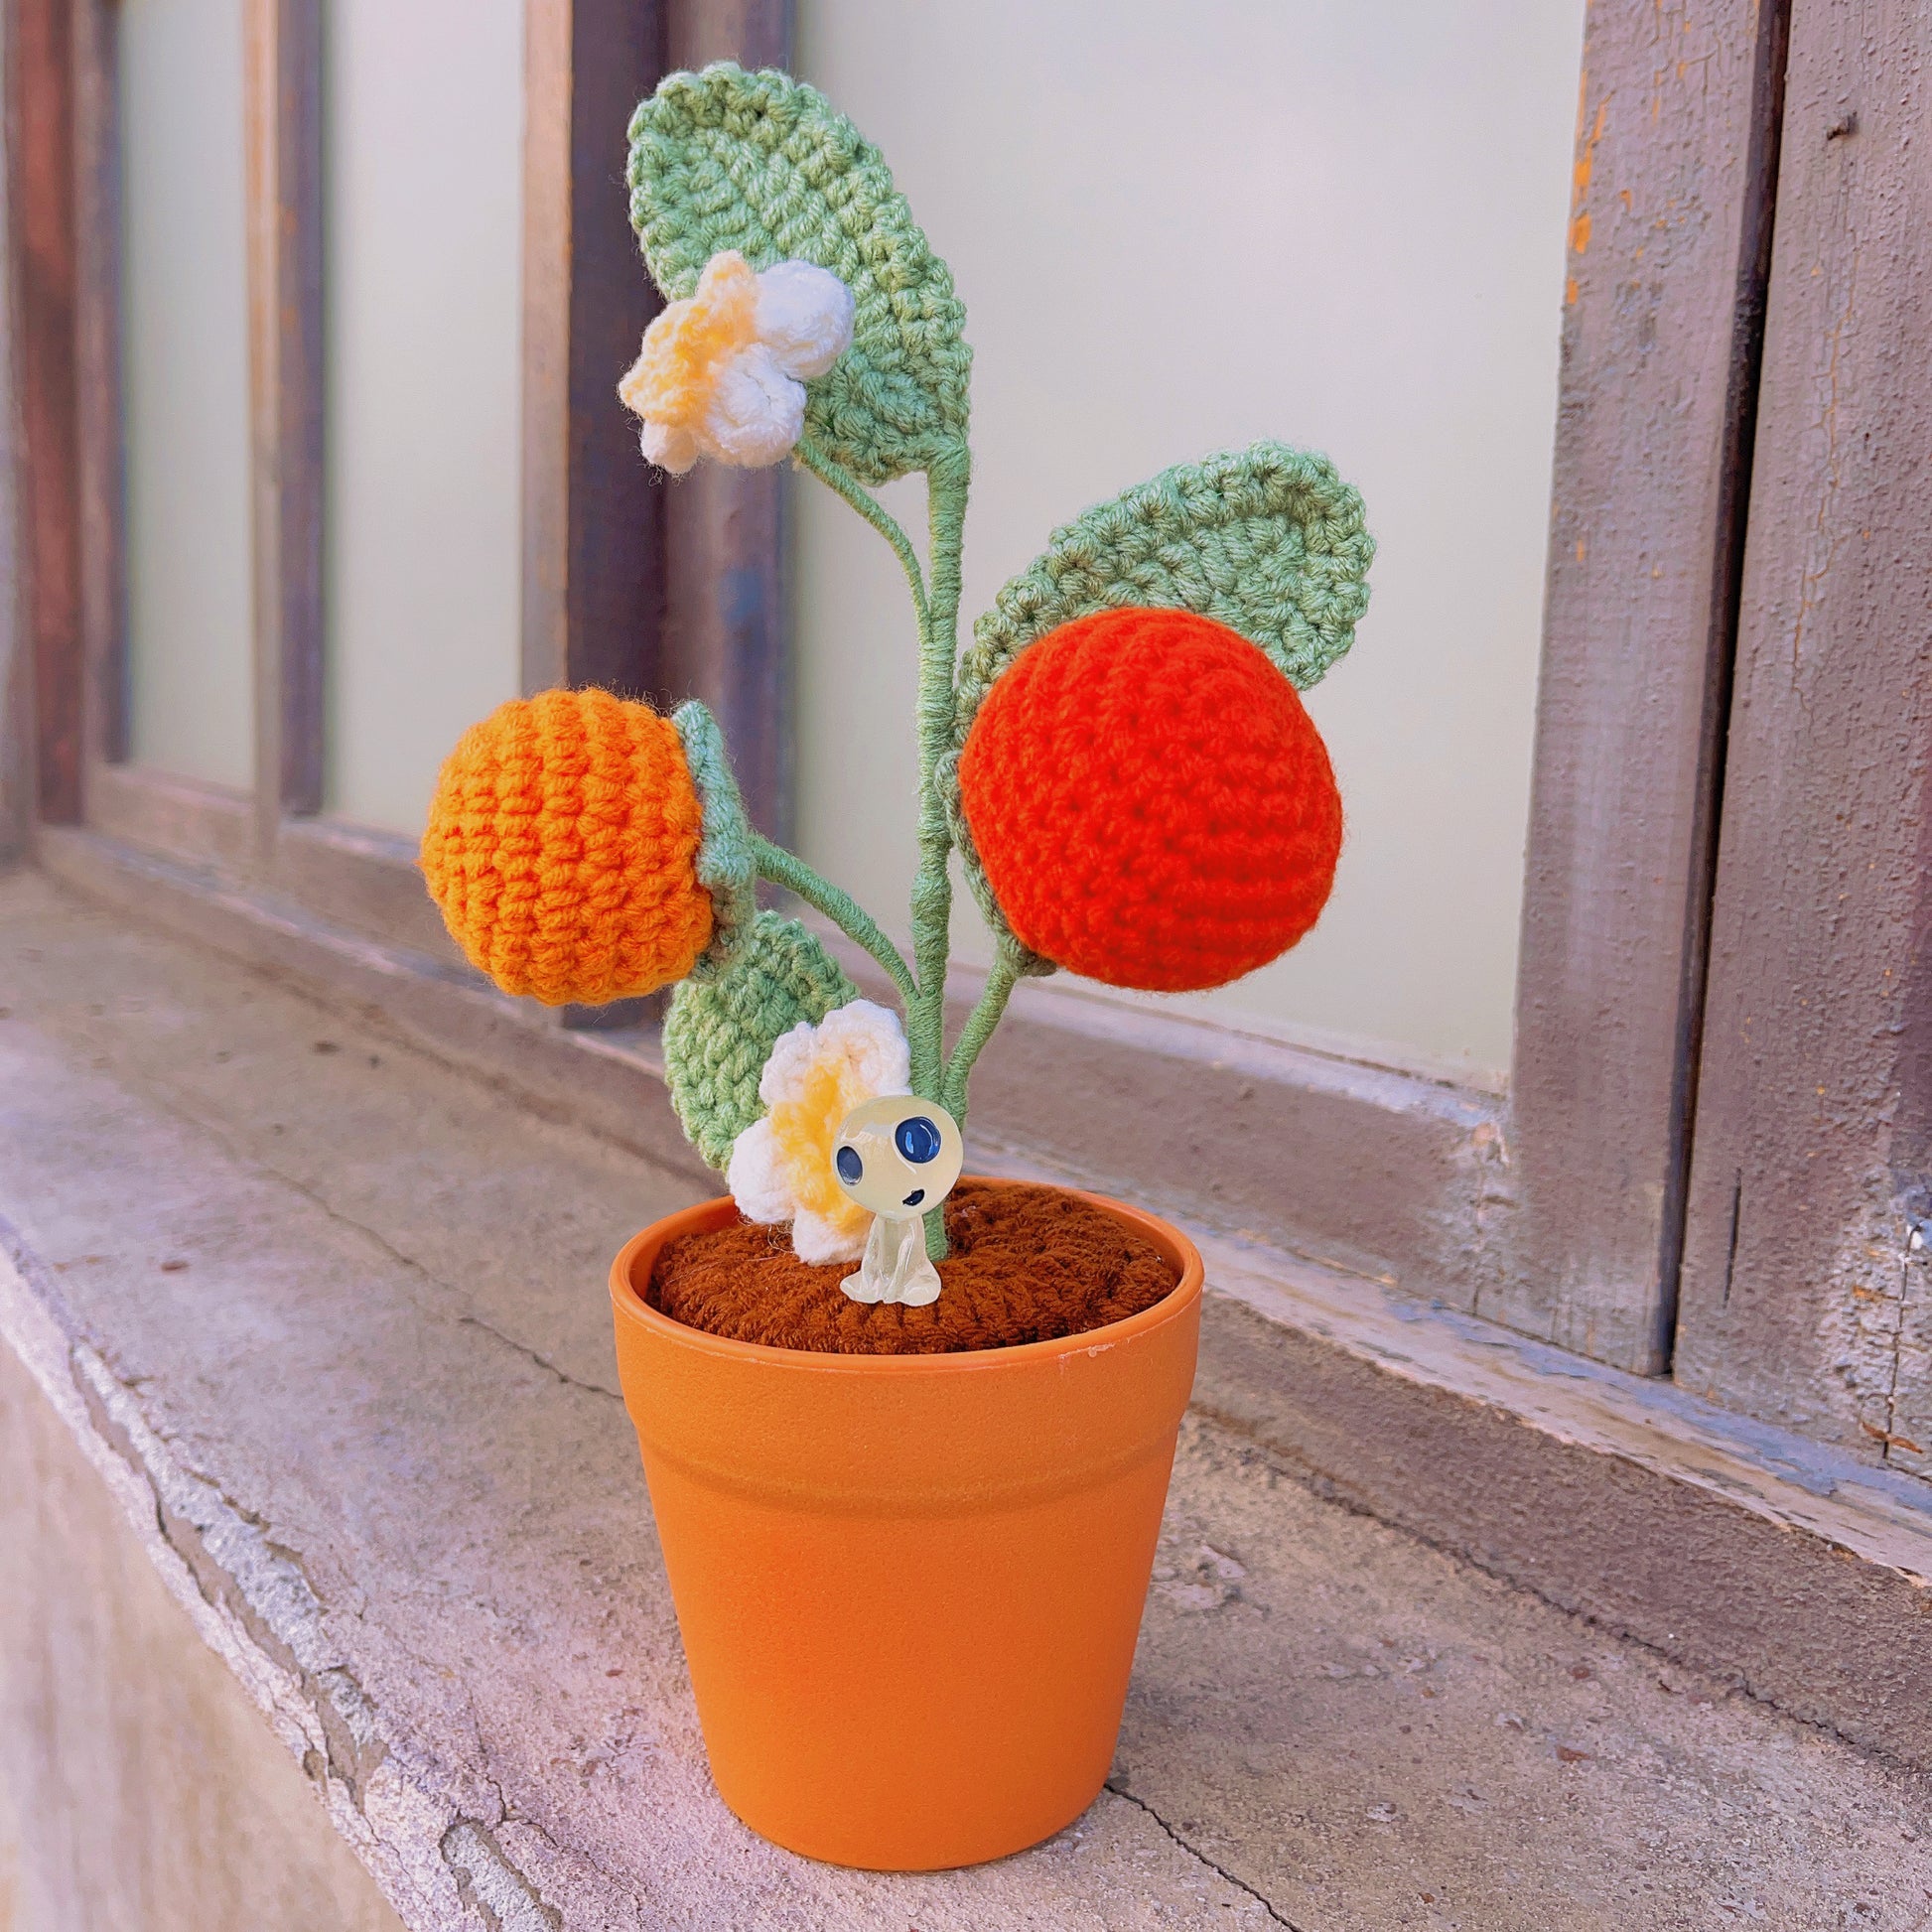 Handgefertigte gehäkelte Kakipflanze – realistische